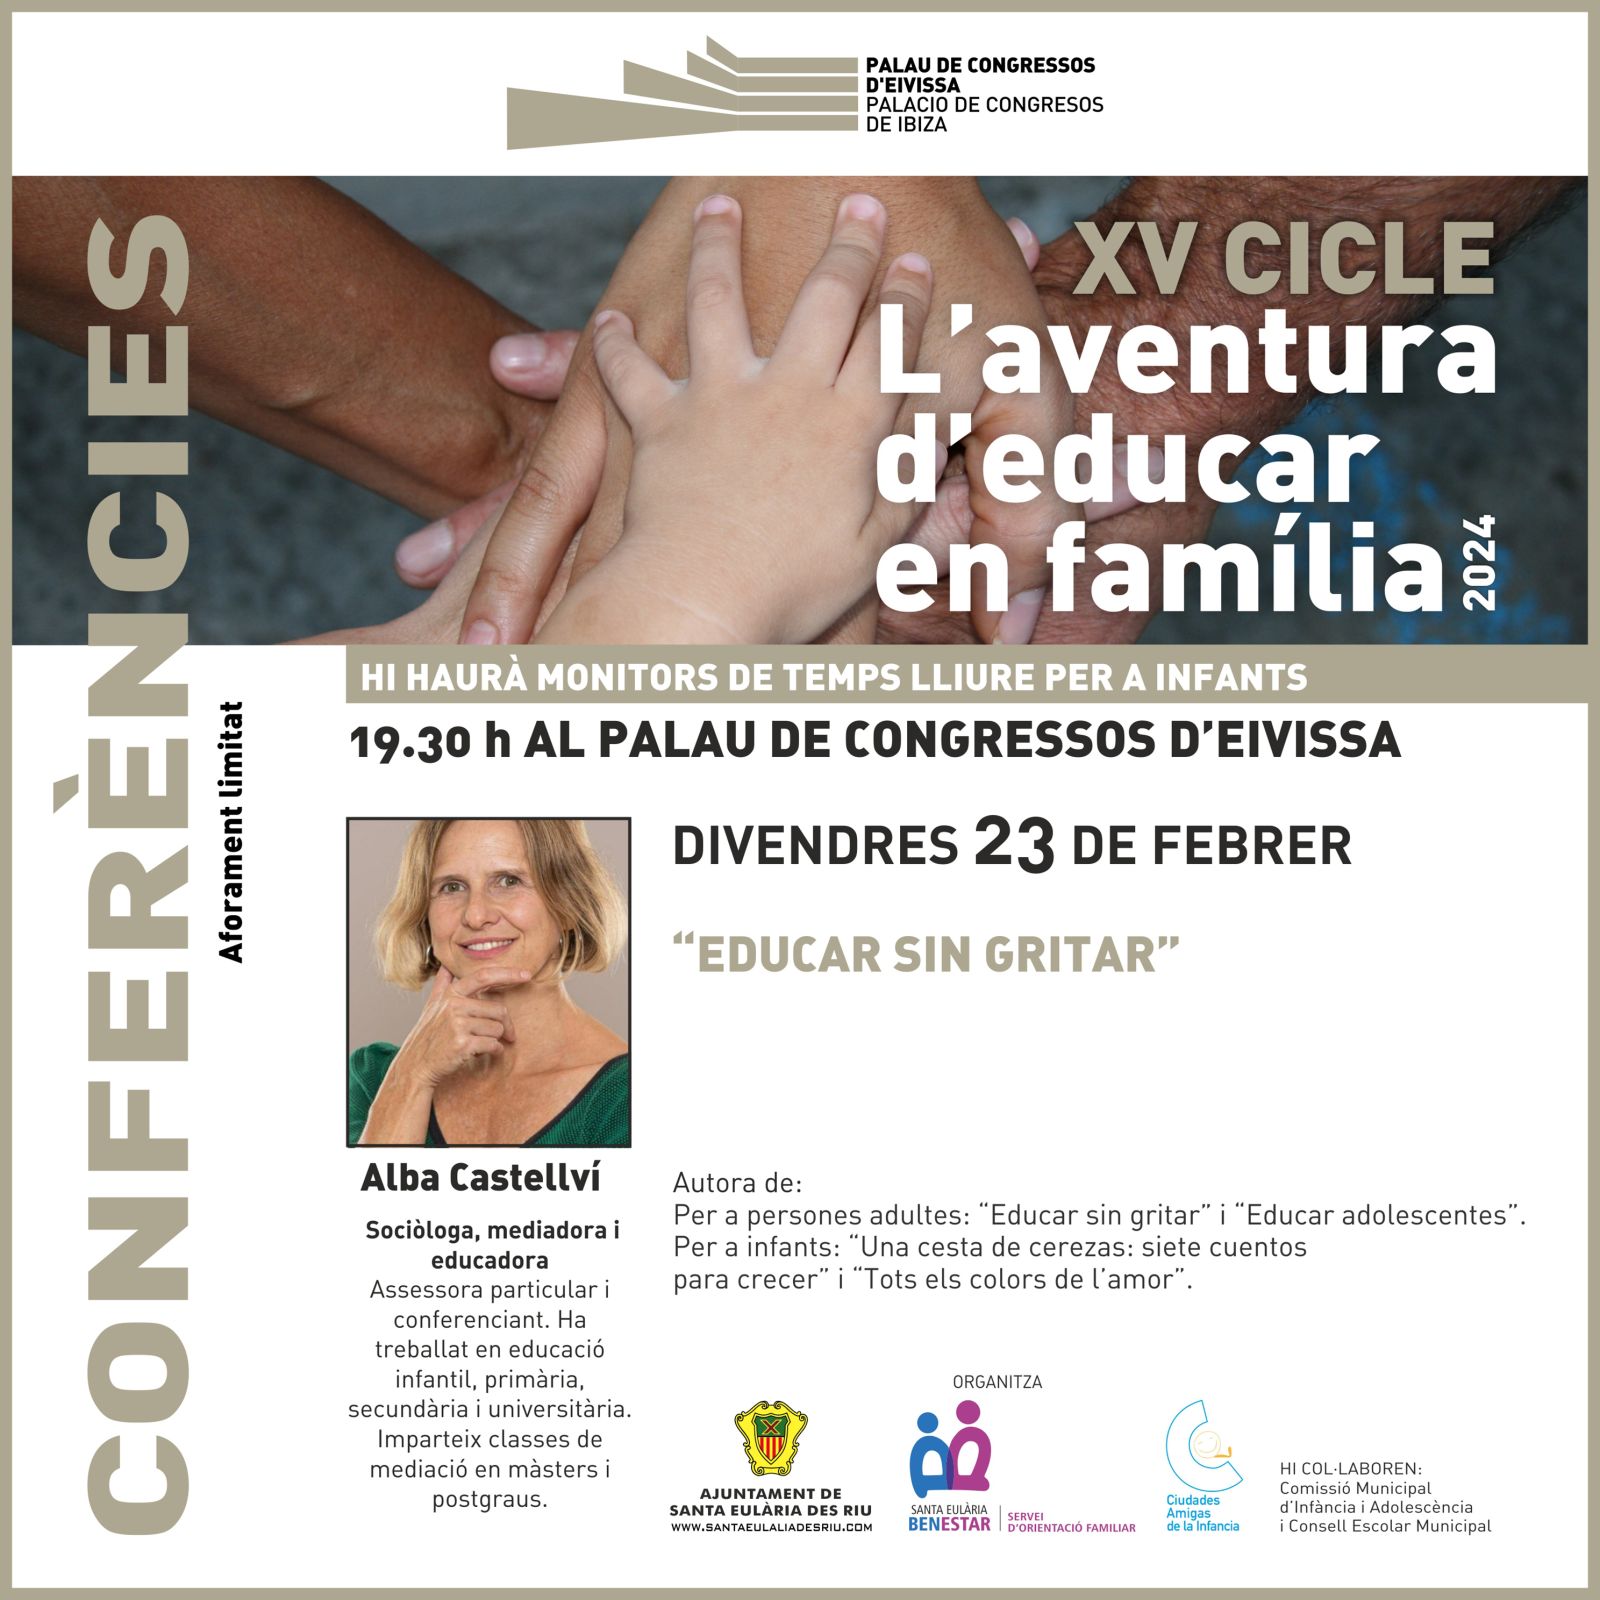 La educadora y mediadora Alba Castellví ofrecerá este viernes pautas para ‘Educar sin gritar’ en la segunda sesión de La Aventura de Educar en Familia